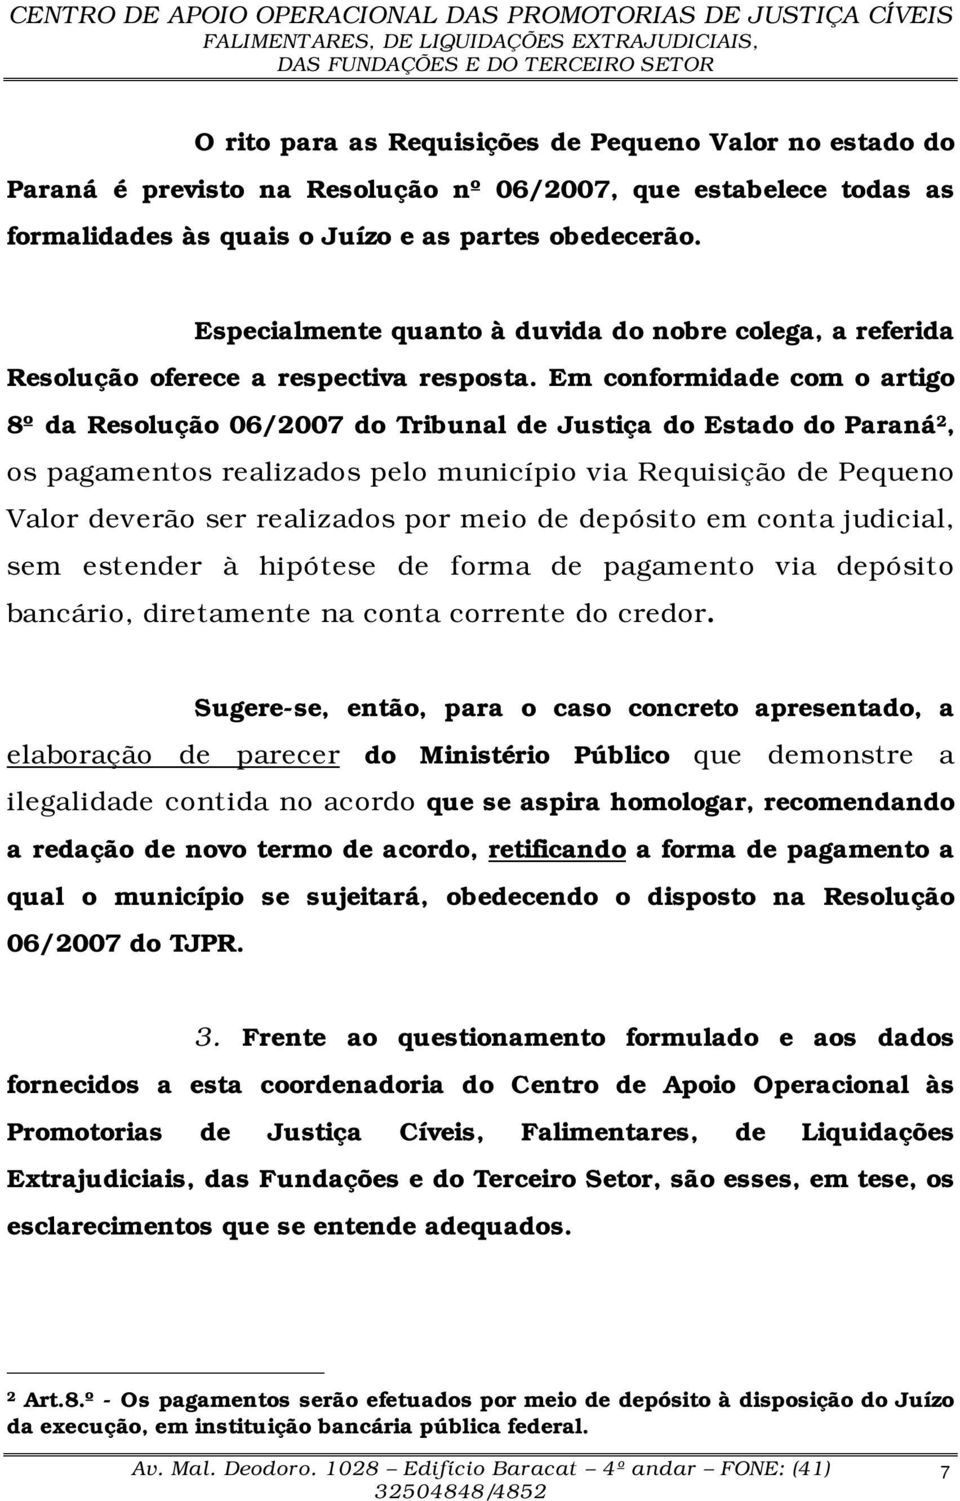 Em conformidade com o artigo 8º da Resolução 06/2007 do Tribunal de Justiça do Estado do Paraná 2, os pagamentos realizados pelo município via Requisição de Pequeno Valor deverão ser realizados por